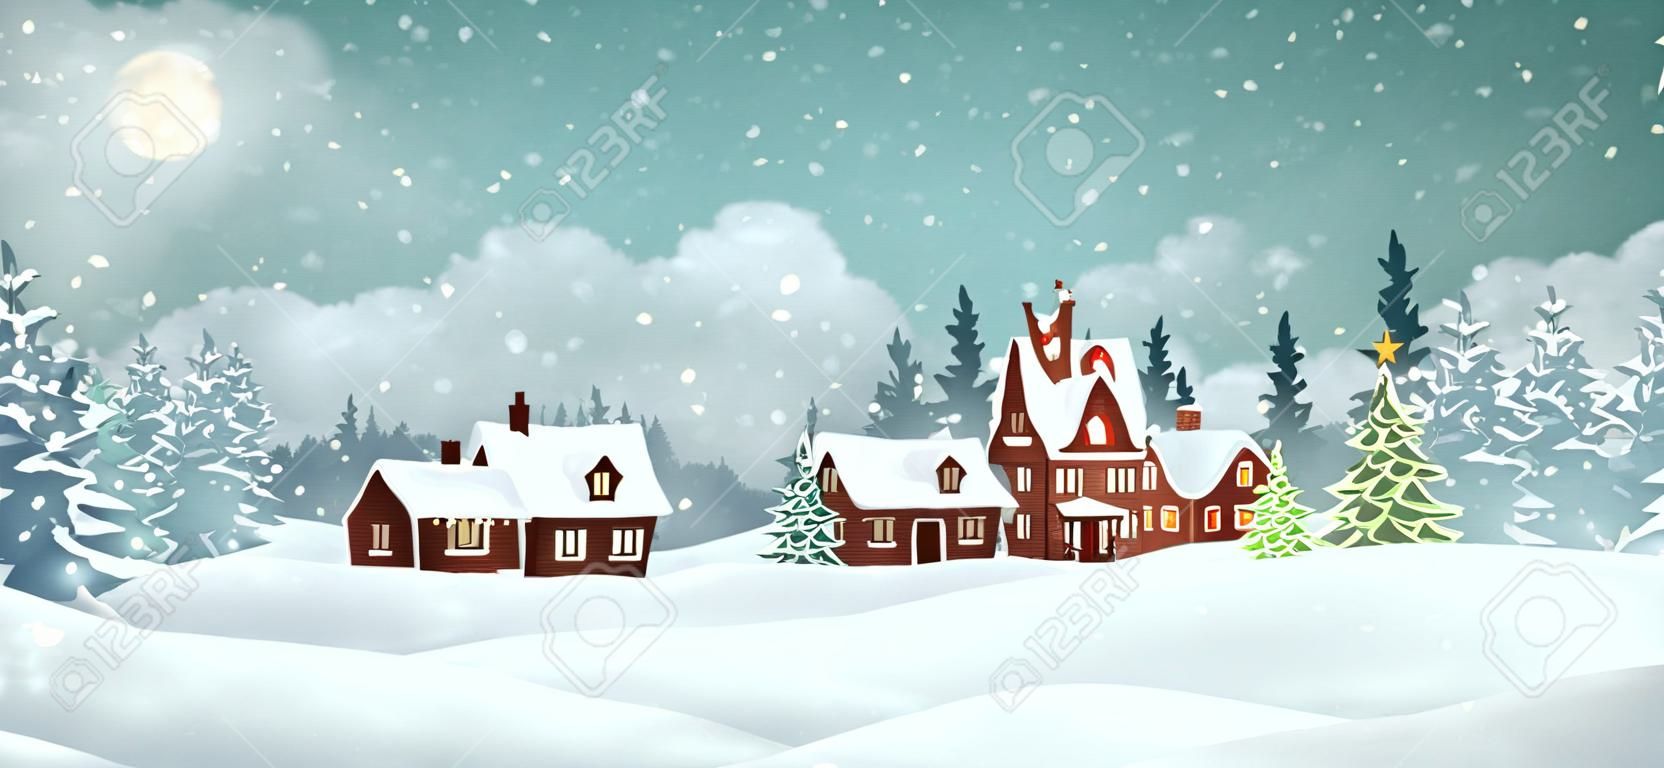 Maisons de village de Noël avec pinède d'hiver. Illustration vectorielle de vacances de Noël